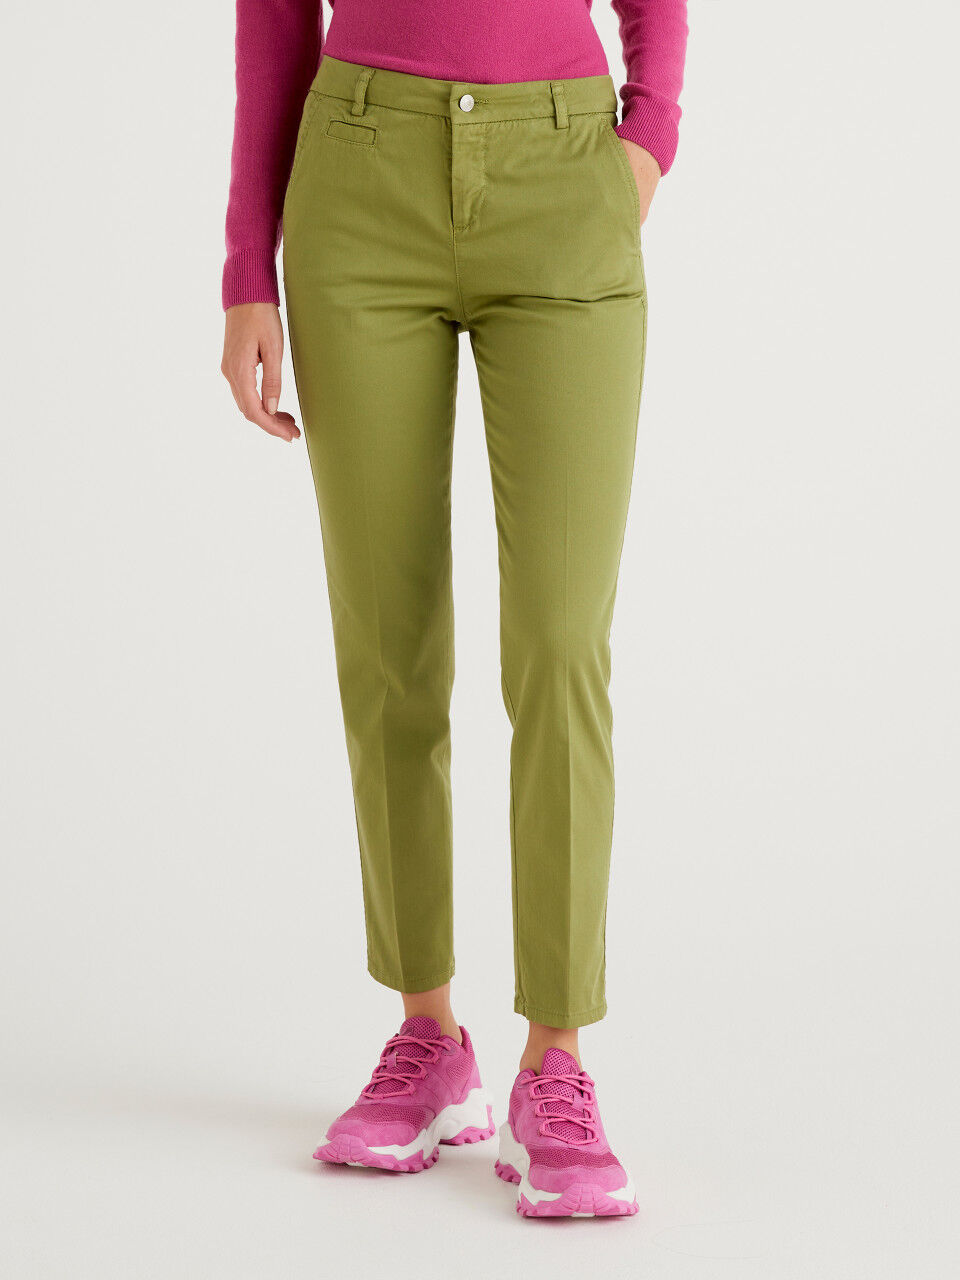 Chino Slim Fit In Cotone Stretch United Colors of Benetton Abbigliamento Pantaloni e jeans Pantaloni Pantaloni chinos 